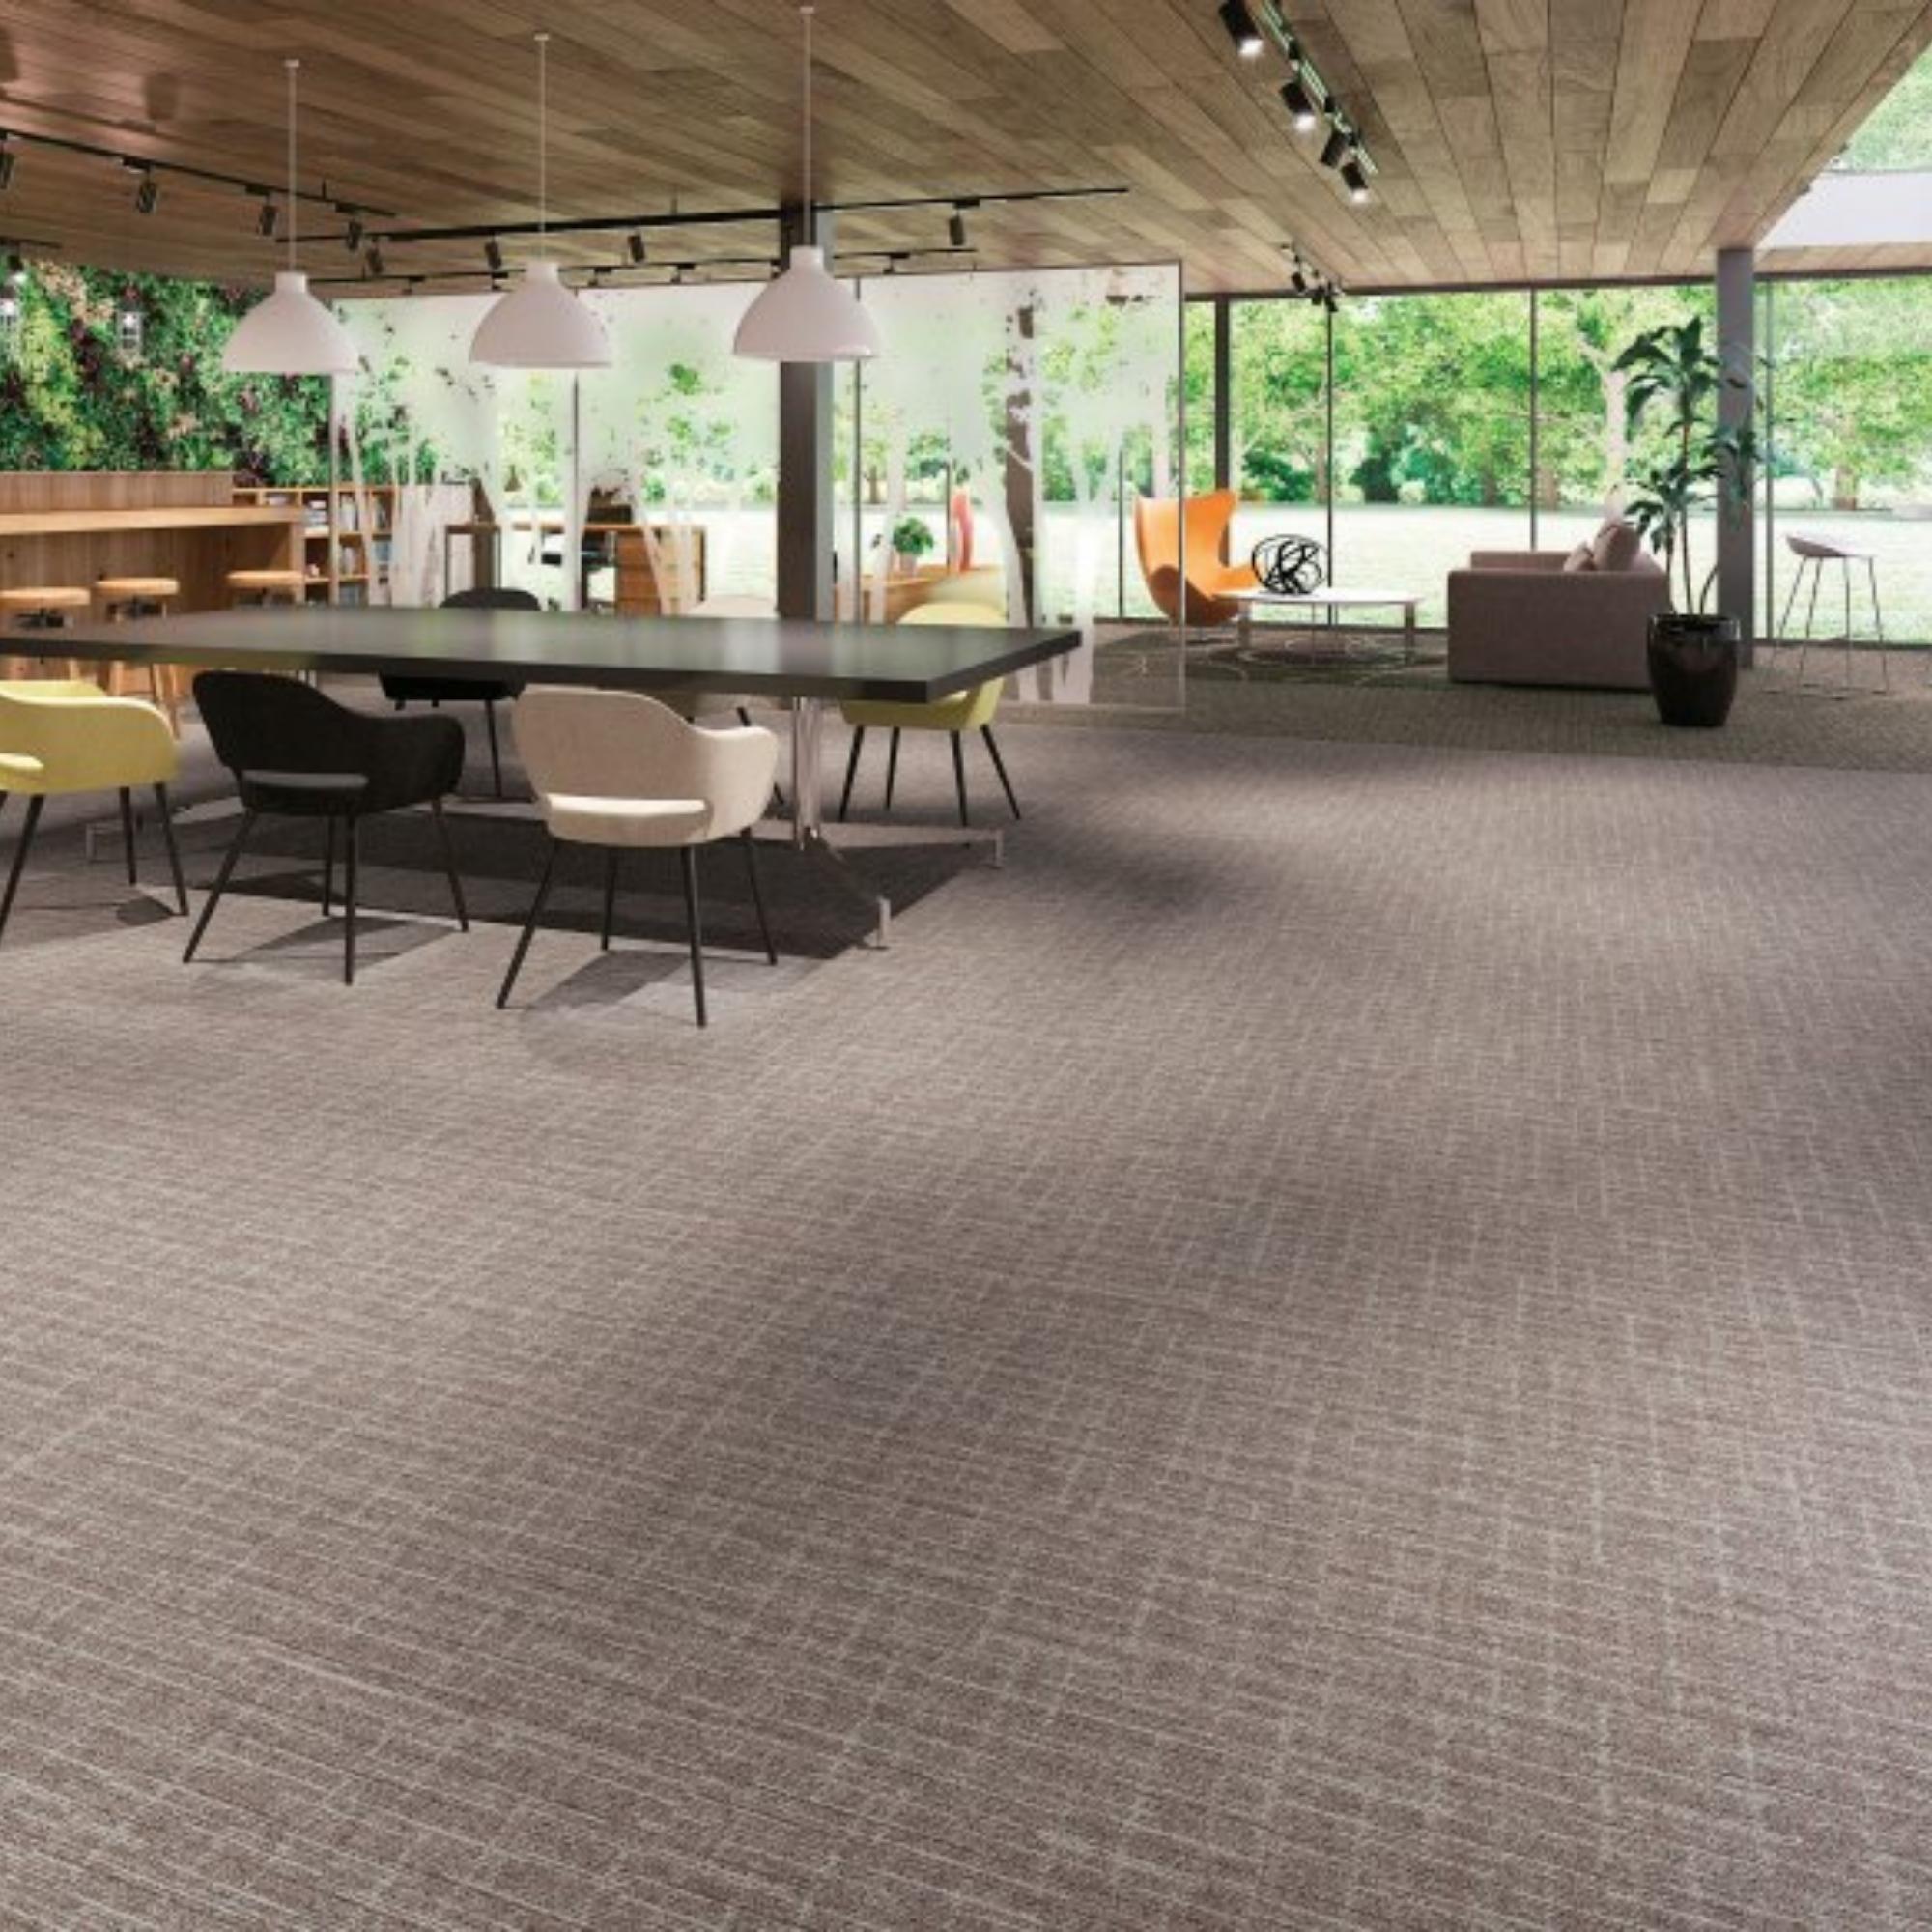 Bark-Carpet-Tile-Flooring-500 x 500mm-Colour -Brown